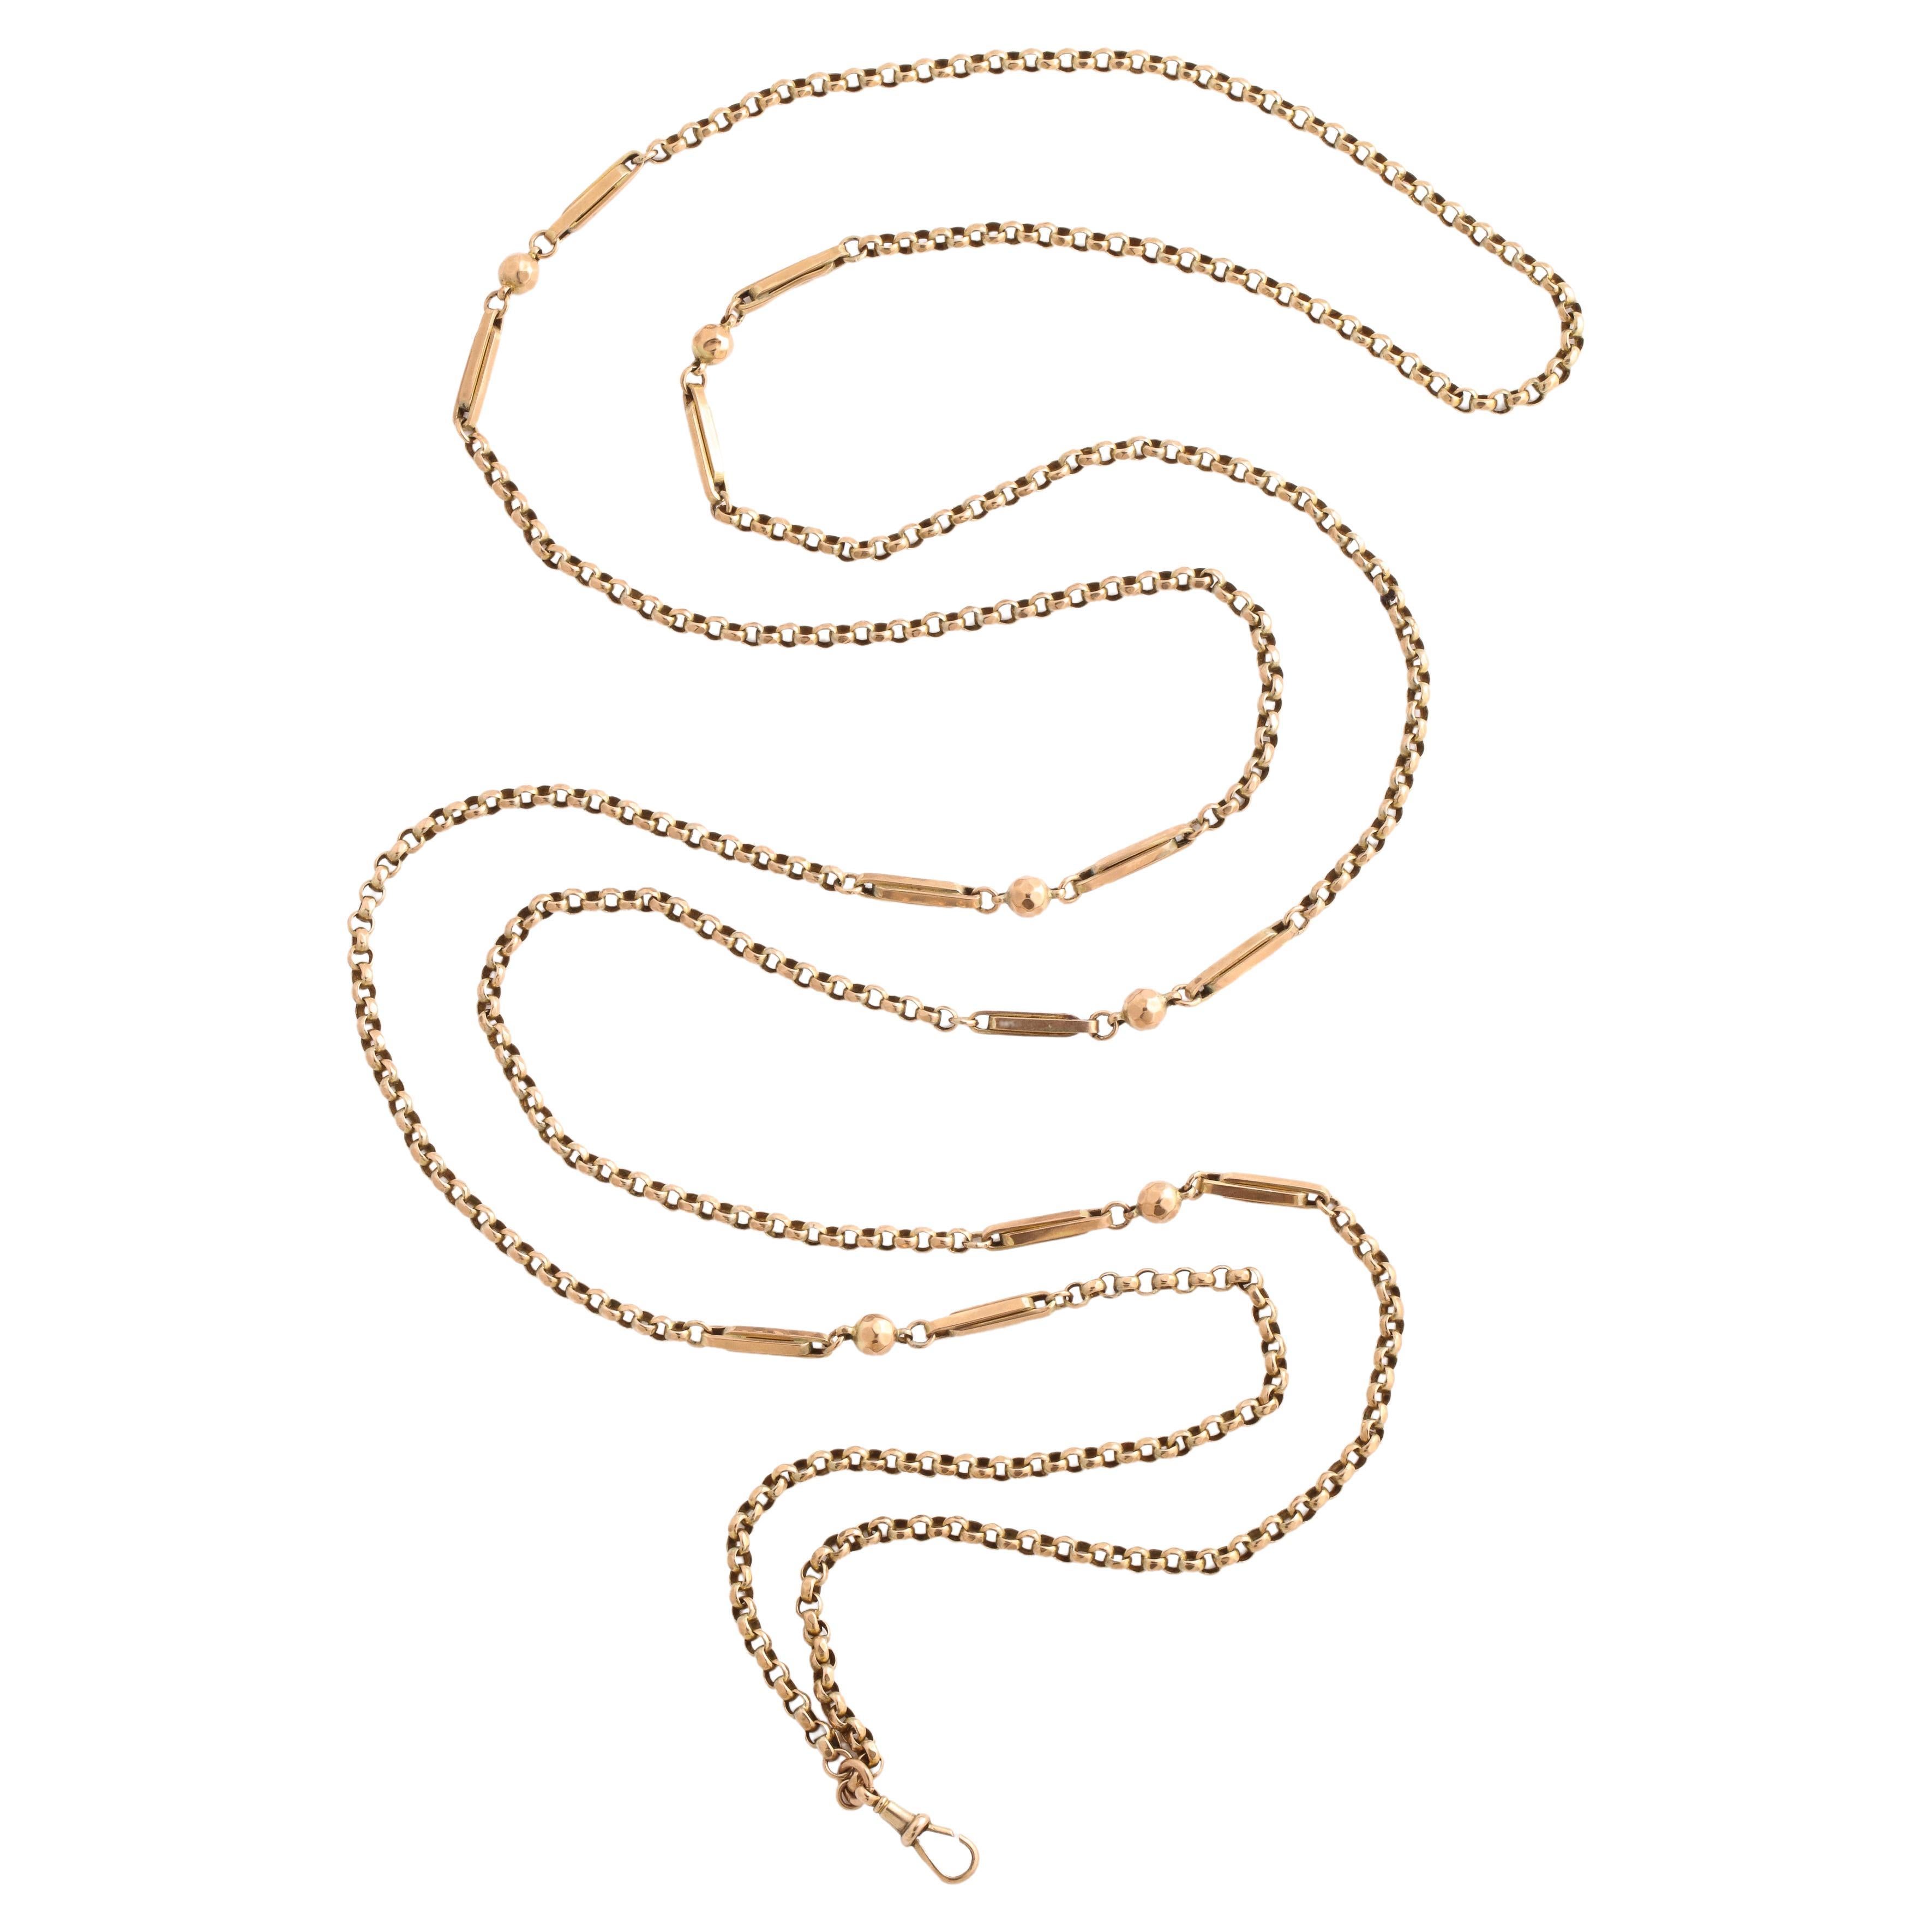 Eine 32,5 Gramm schwere viktorianische 15-karätige Goldkette mit abgeschrägten Perlen, röhrenförmigen und runden Gliedern, die sich horizontal und vertikal abwechseln. Die Kette ist durch die Vielzahl der Glieder strukturierter als einfache Ketten.